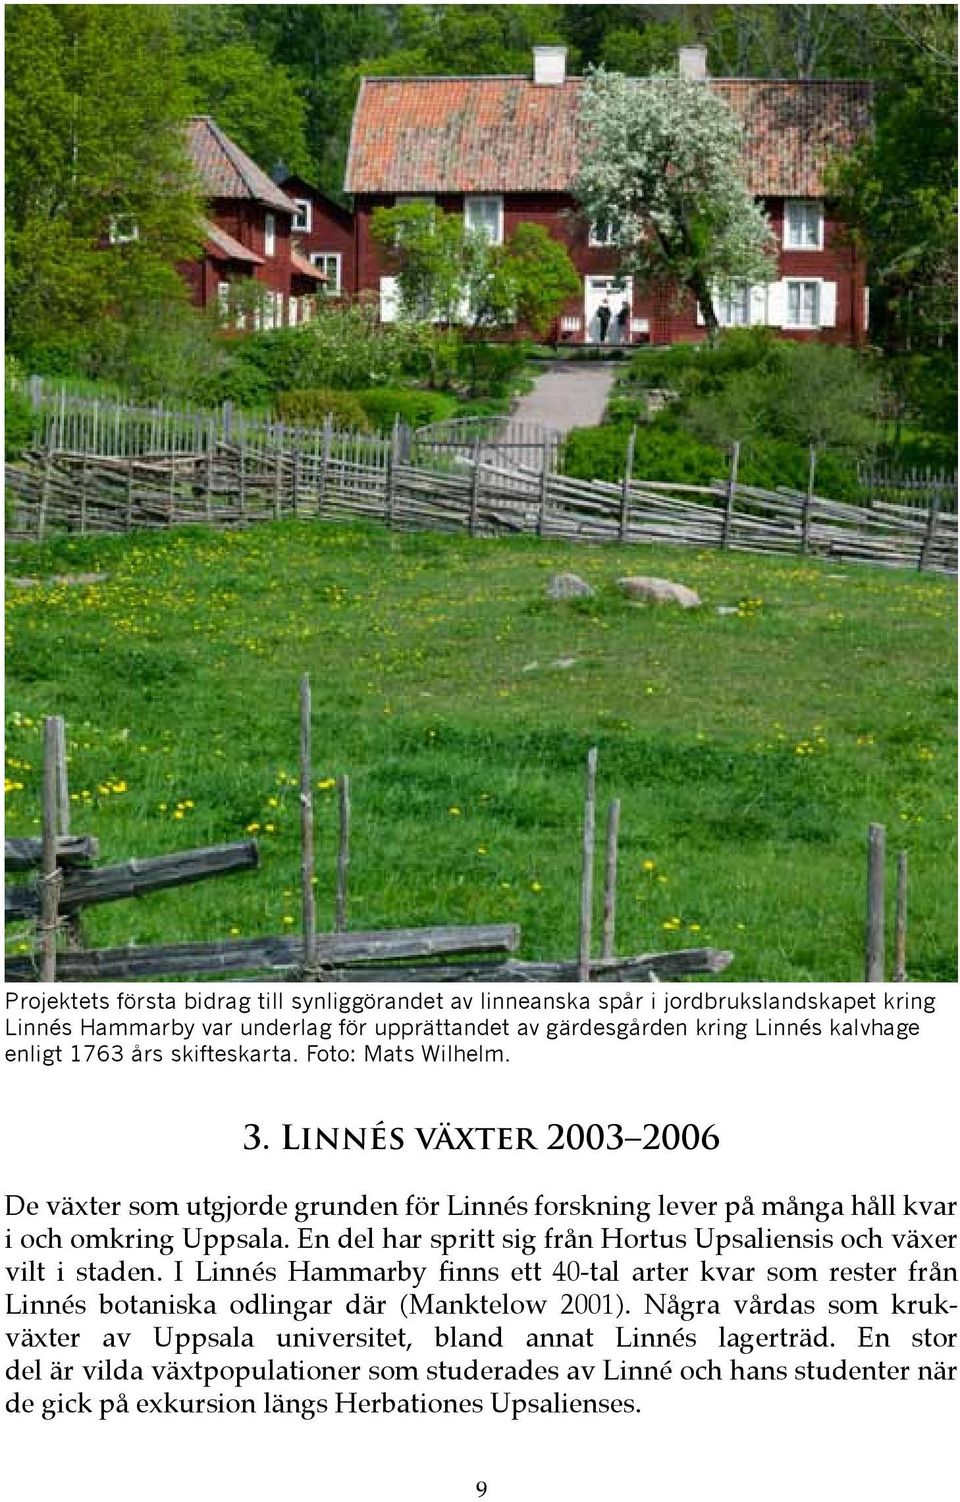 En del har spritt sig från Hortus Upsaliensis och växer vilt i staden. I Linnés Hammarby finns ett 40-tal arter kvar som rester från Linnés botaniska odlingar där (Manktelow 2001).